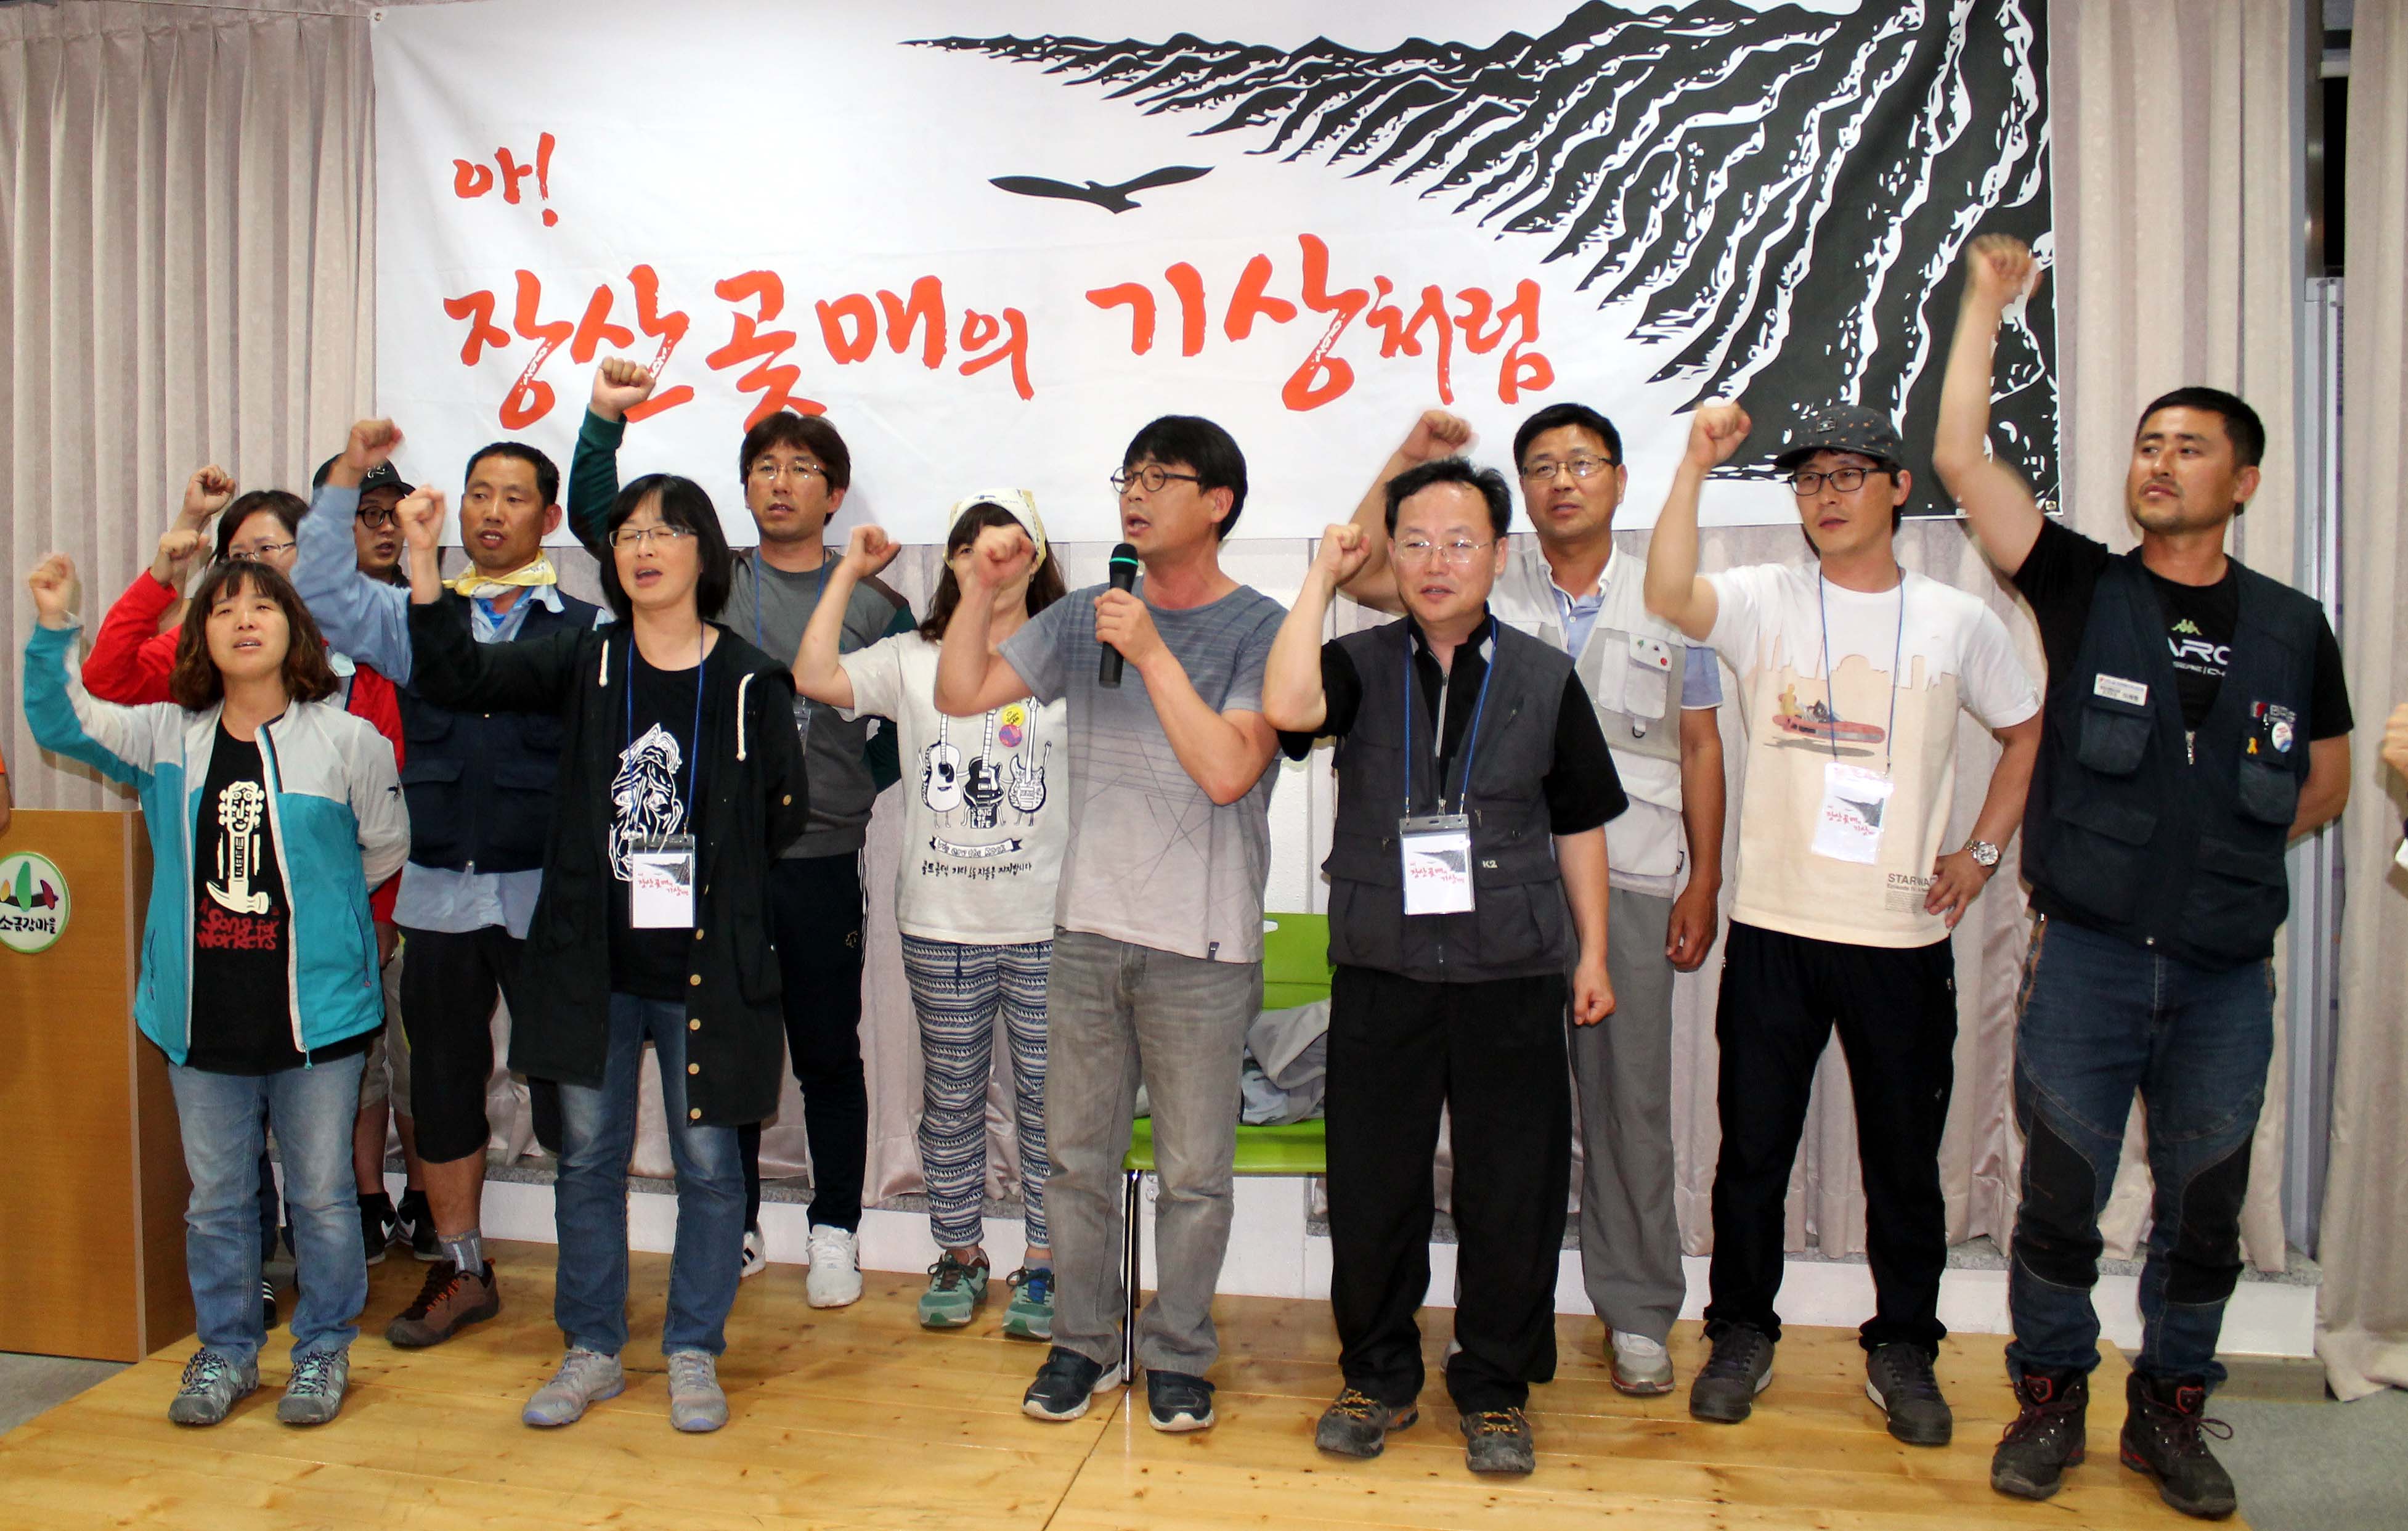 장산곶매 등산패 20주년 기념식에서 '임을 위한 행진곡'을 합창하는 노동자들.